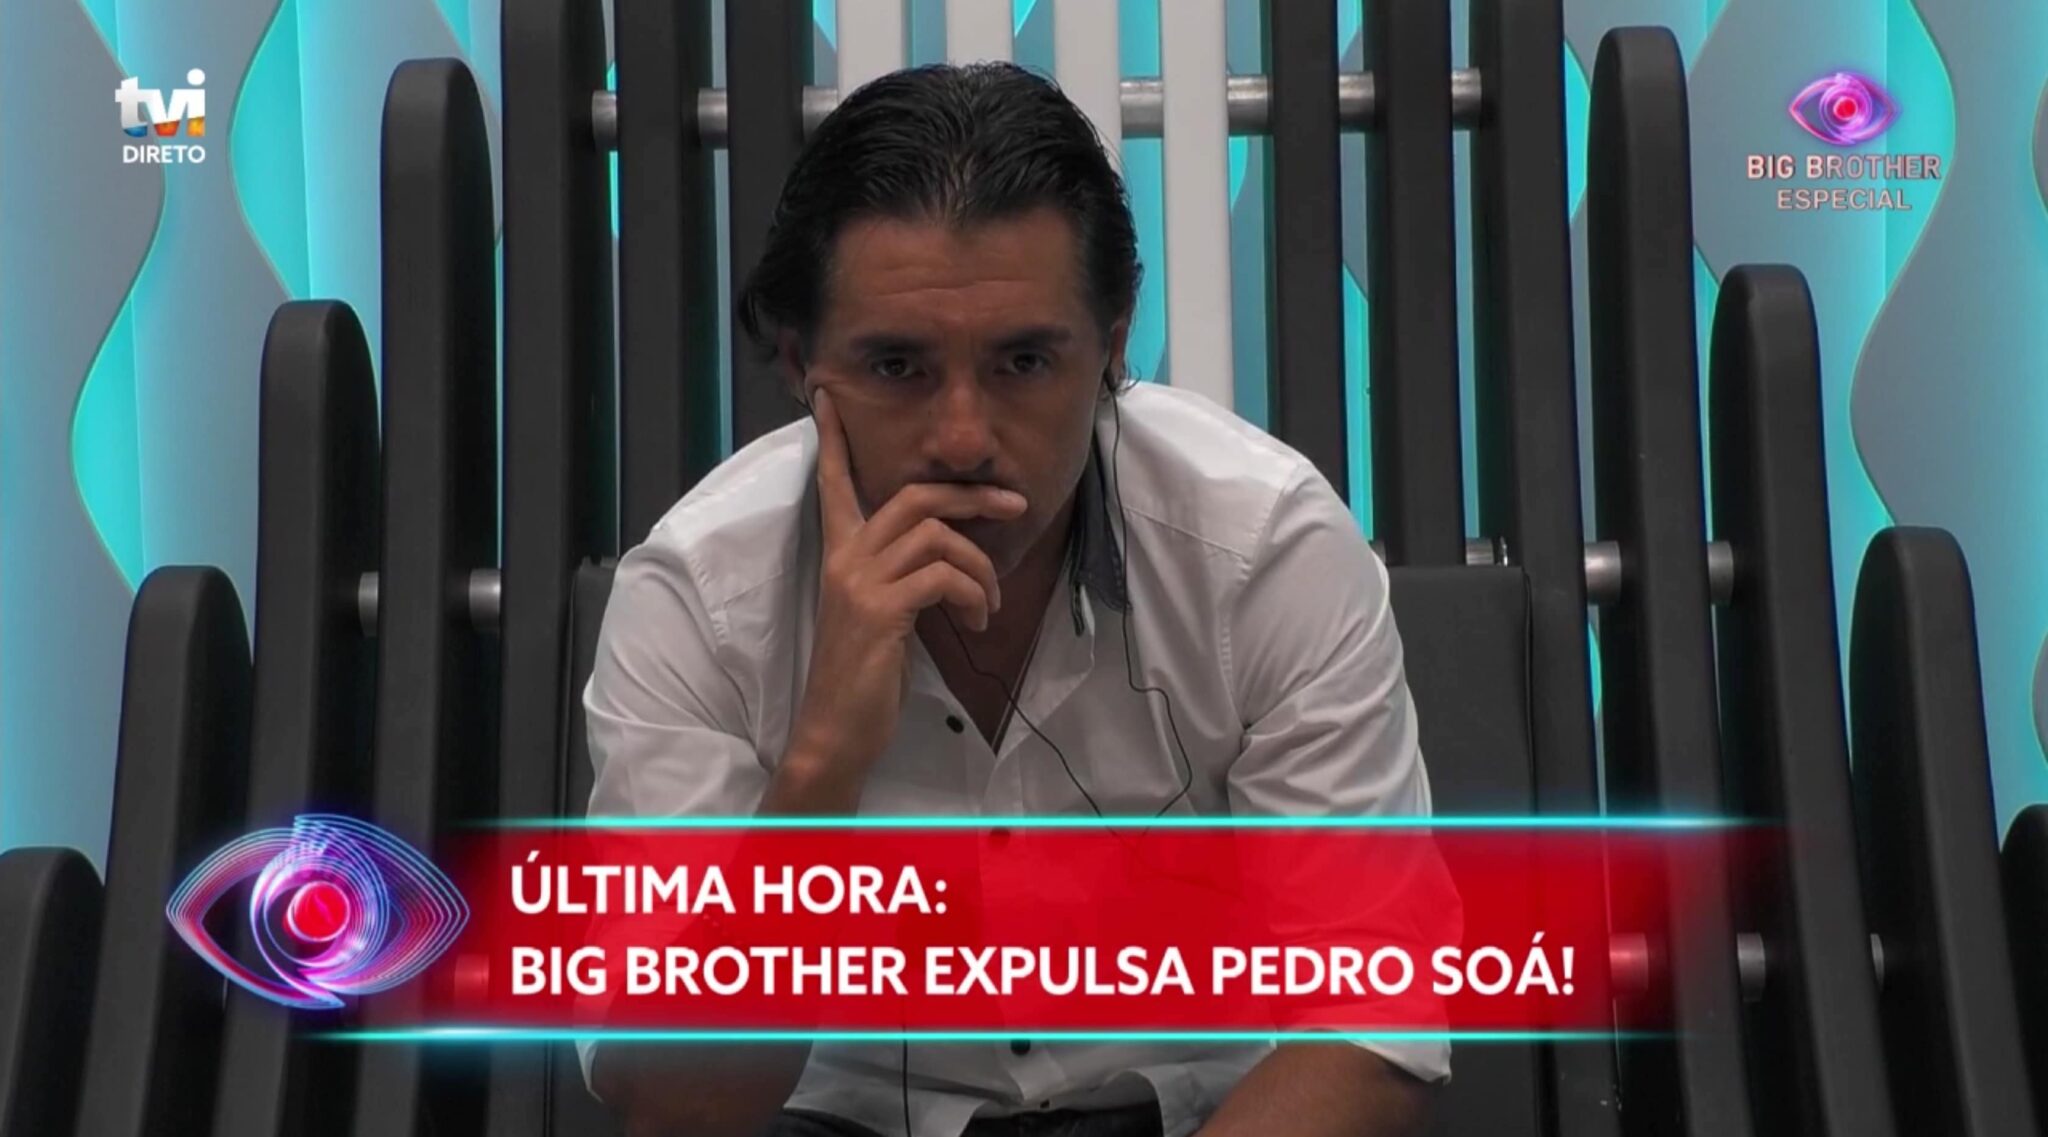 big brother pedro soa expulso scaled "A decisão de expulsar o Pedro Soá foi minha", diz diretor da TVI